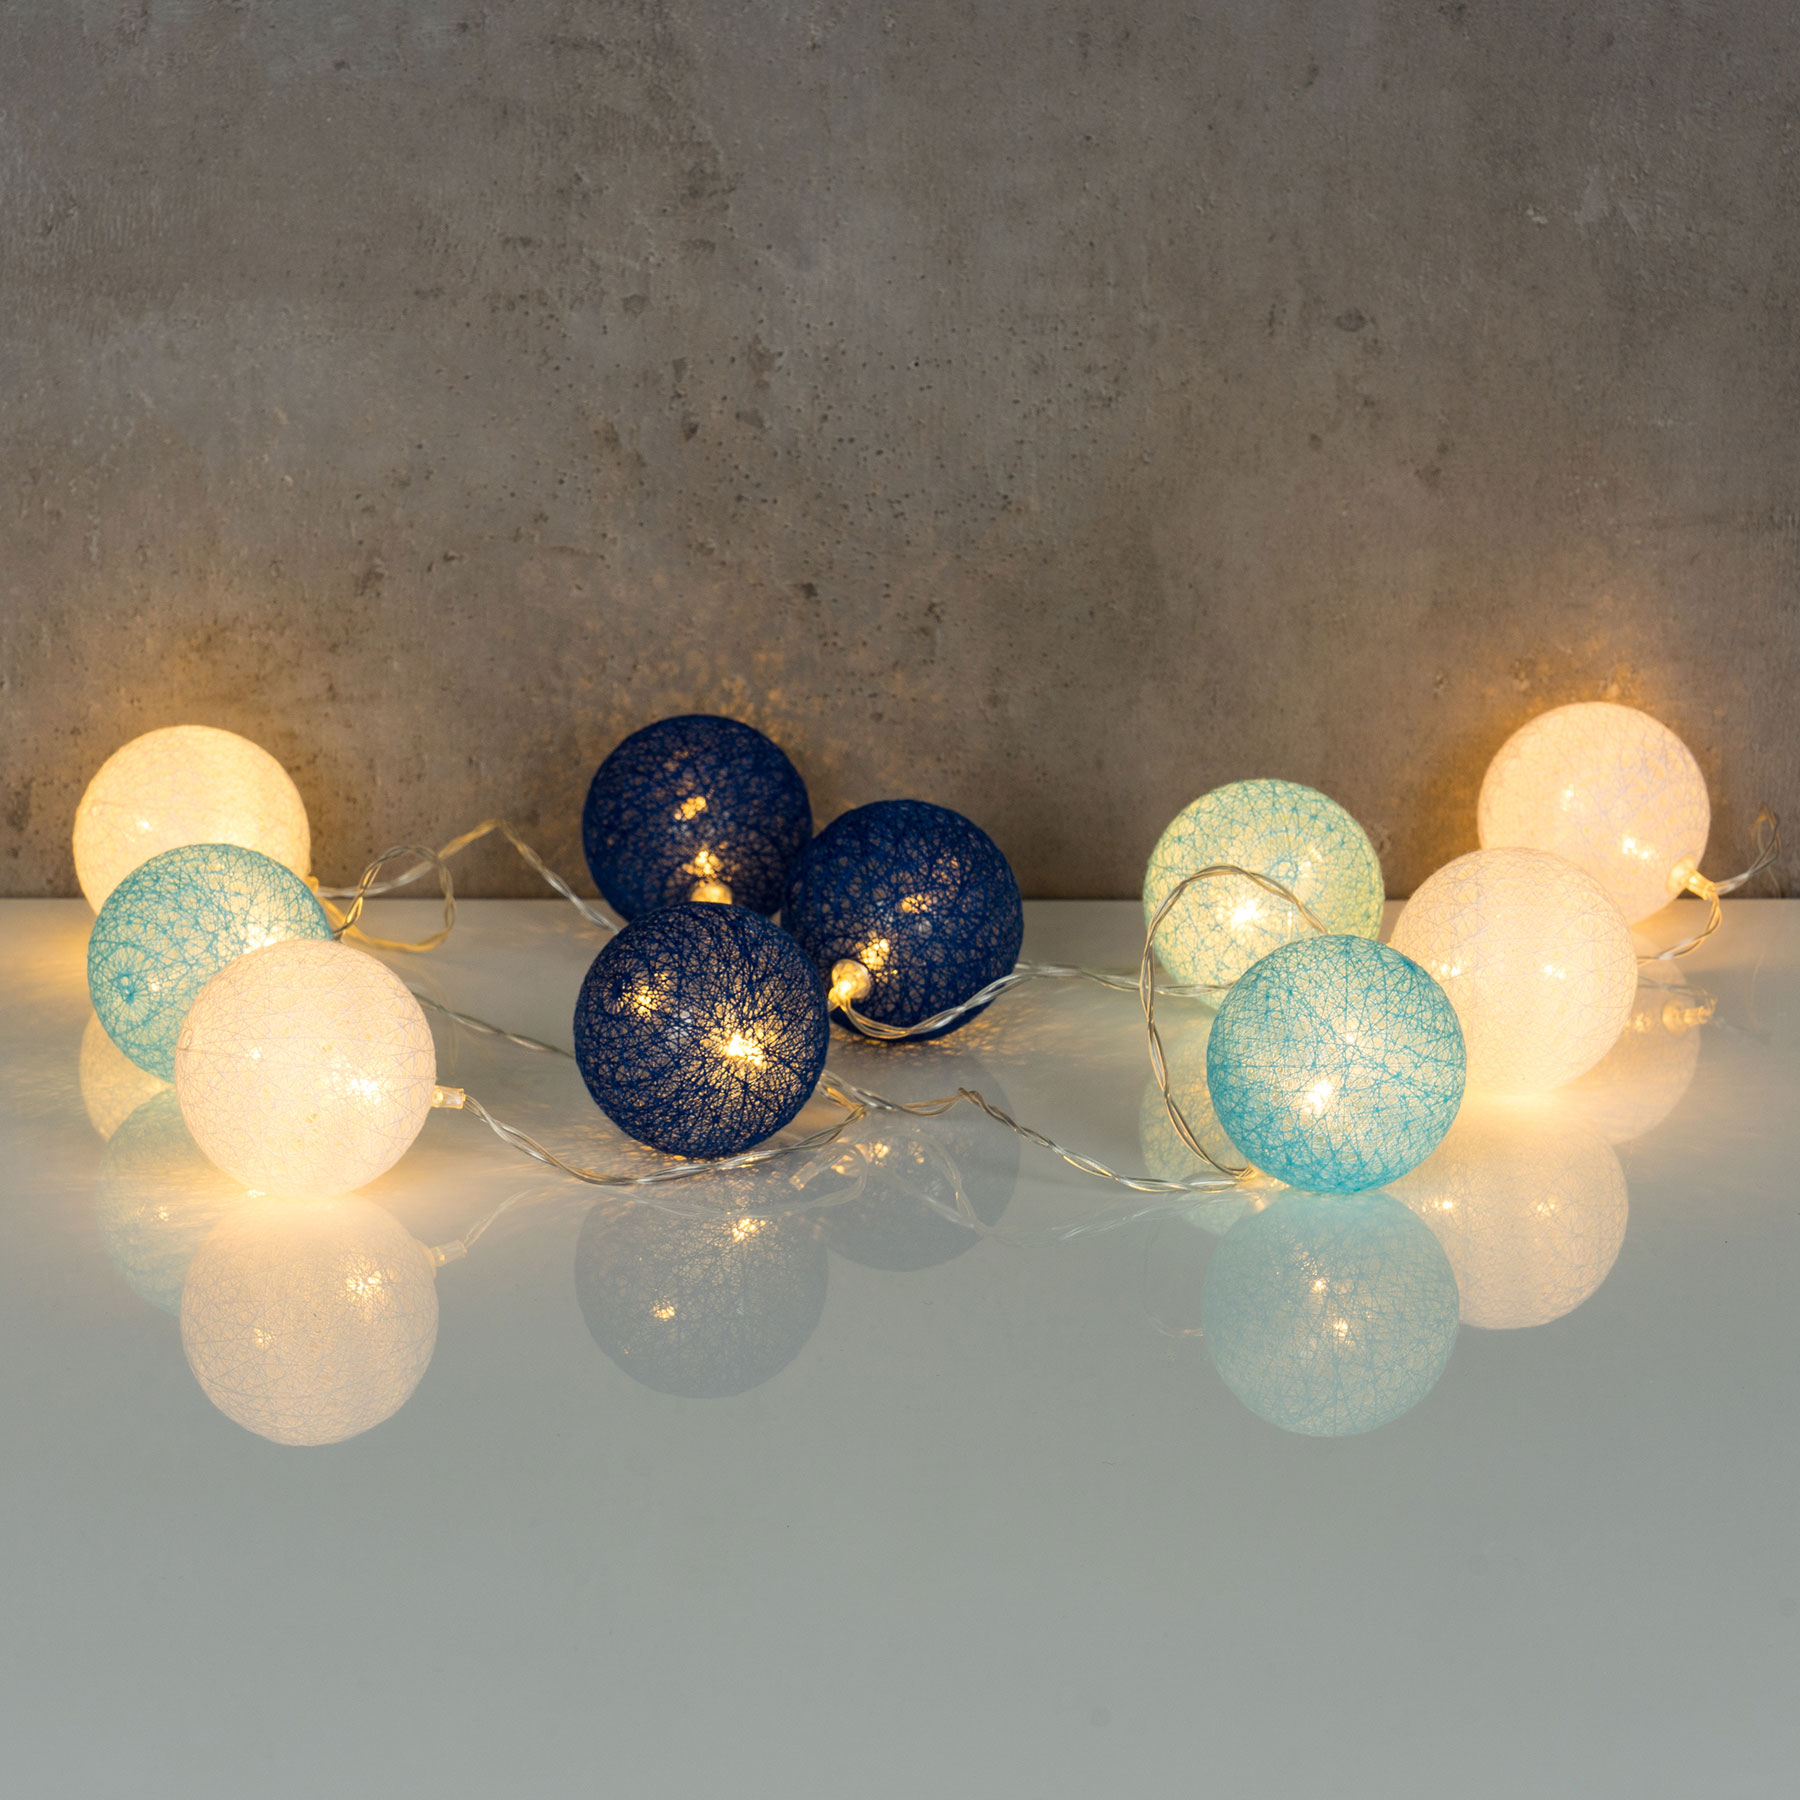 10er Lichterkette LED Kugeln Lampions Baumwolle Blau Weiß Cotton Warmweiß